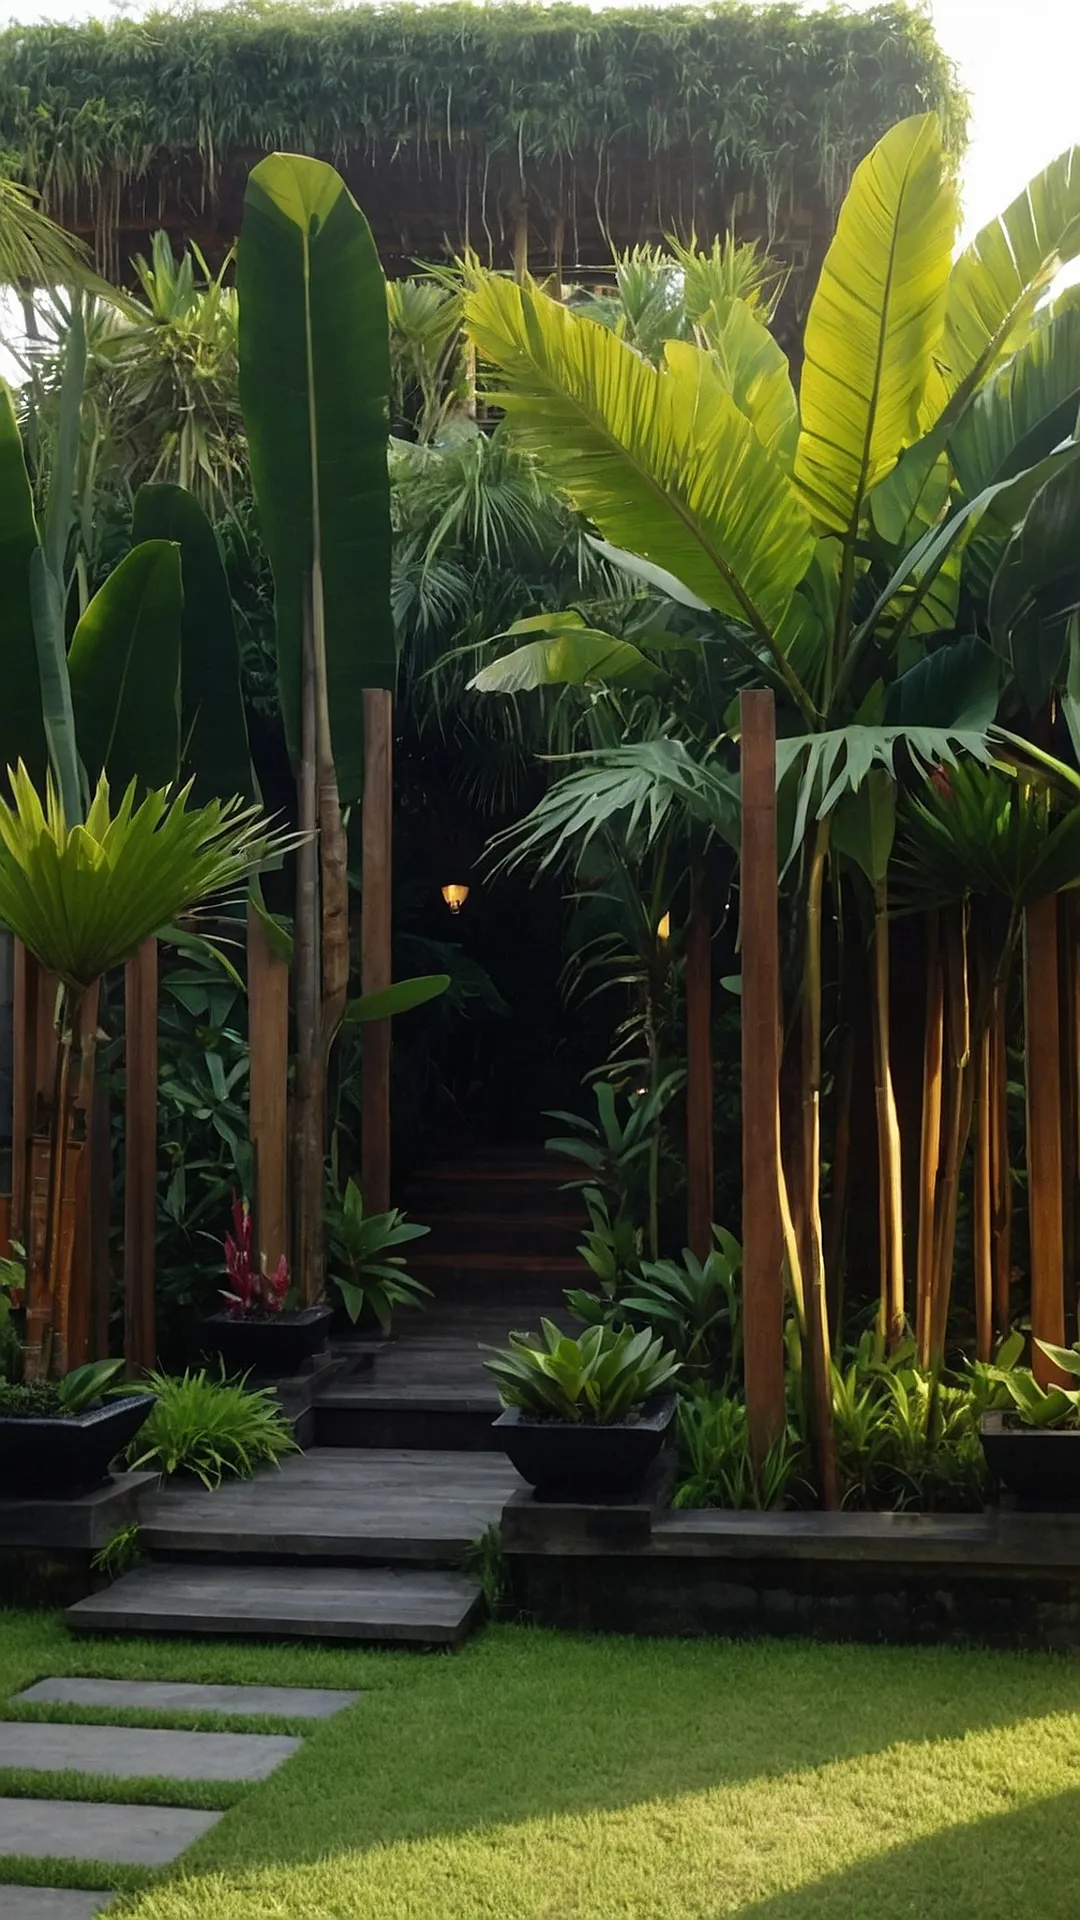 Island Dreams: Balinese Garden Imaginations